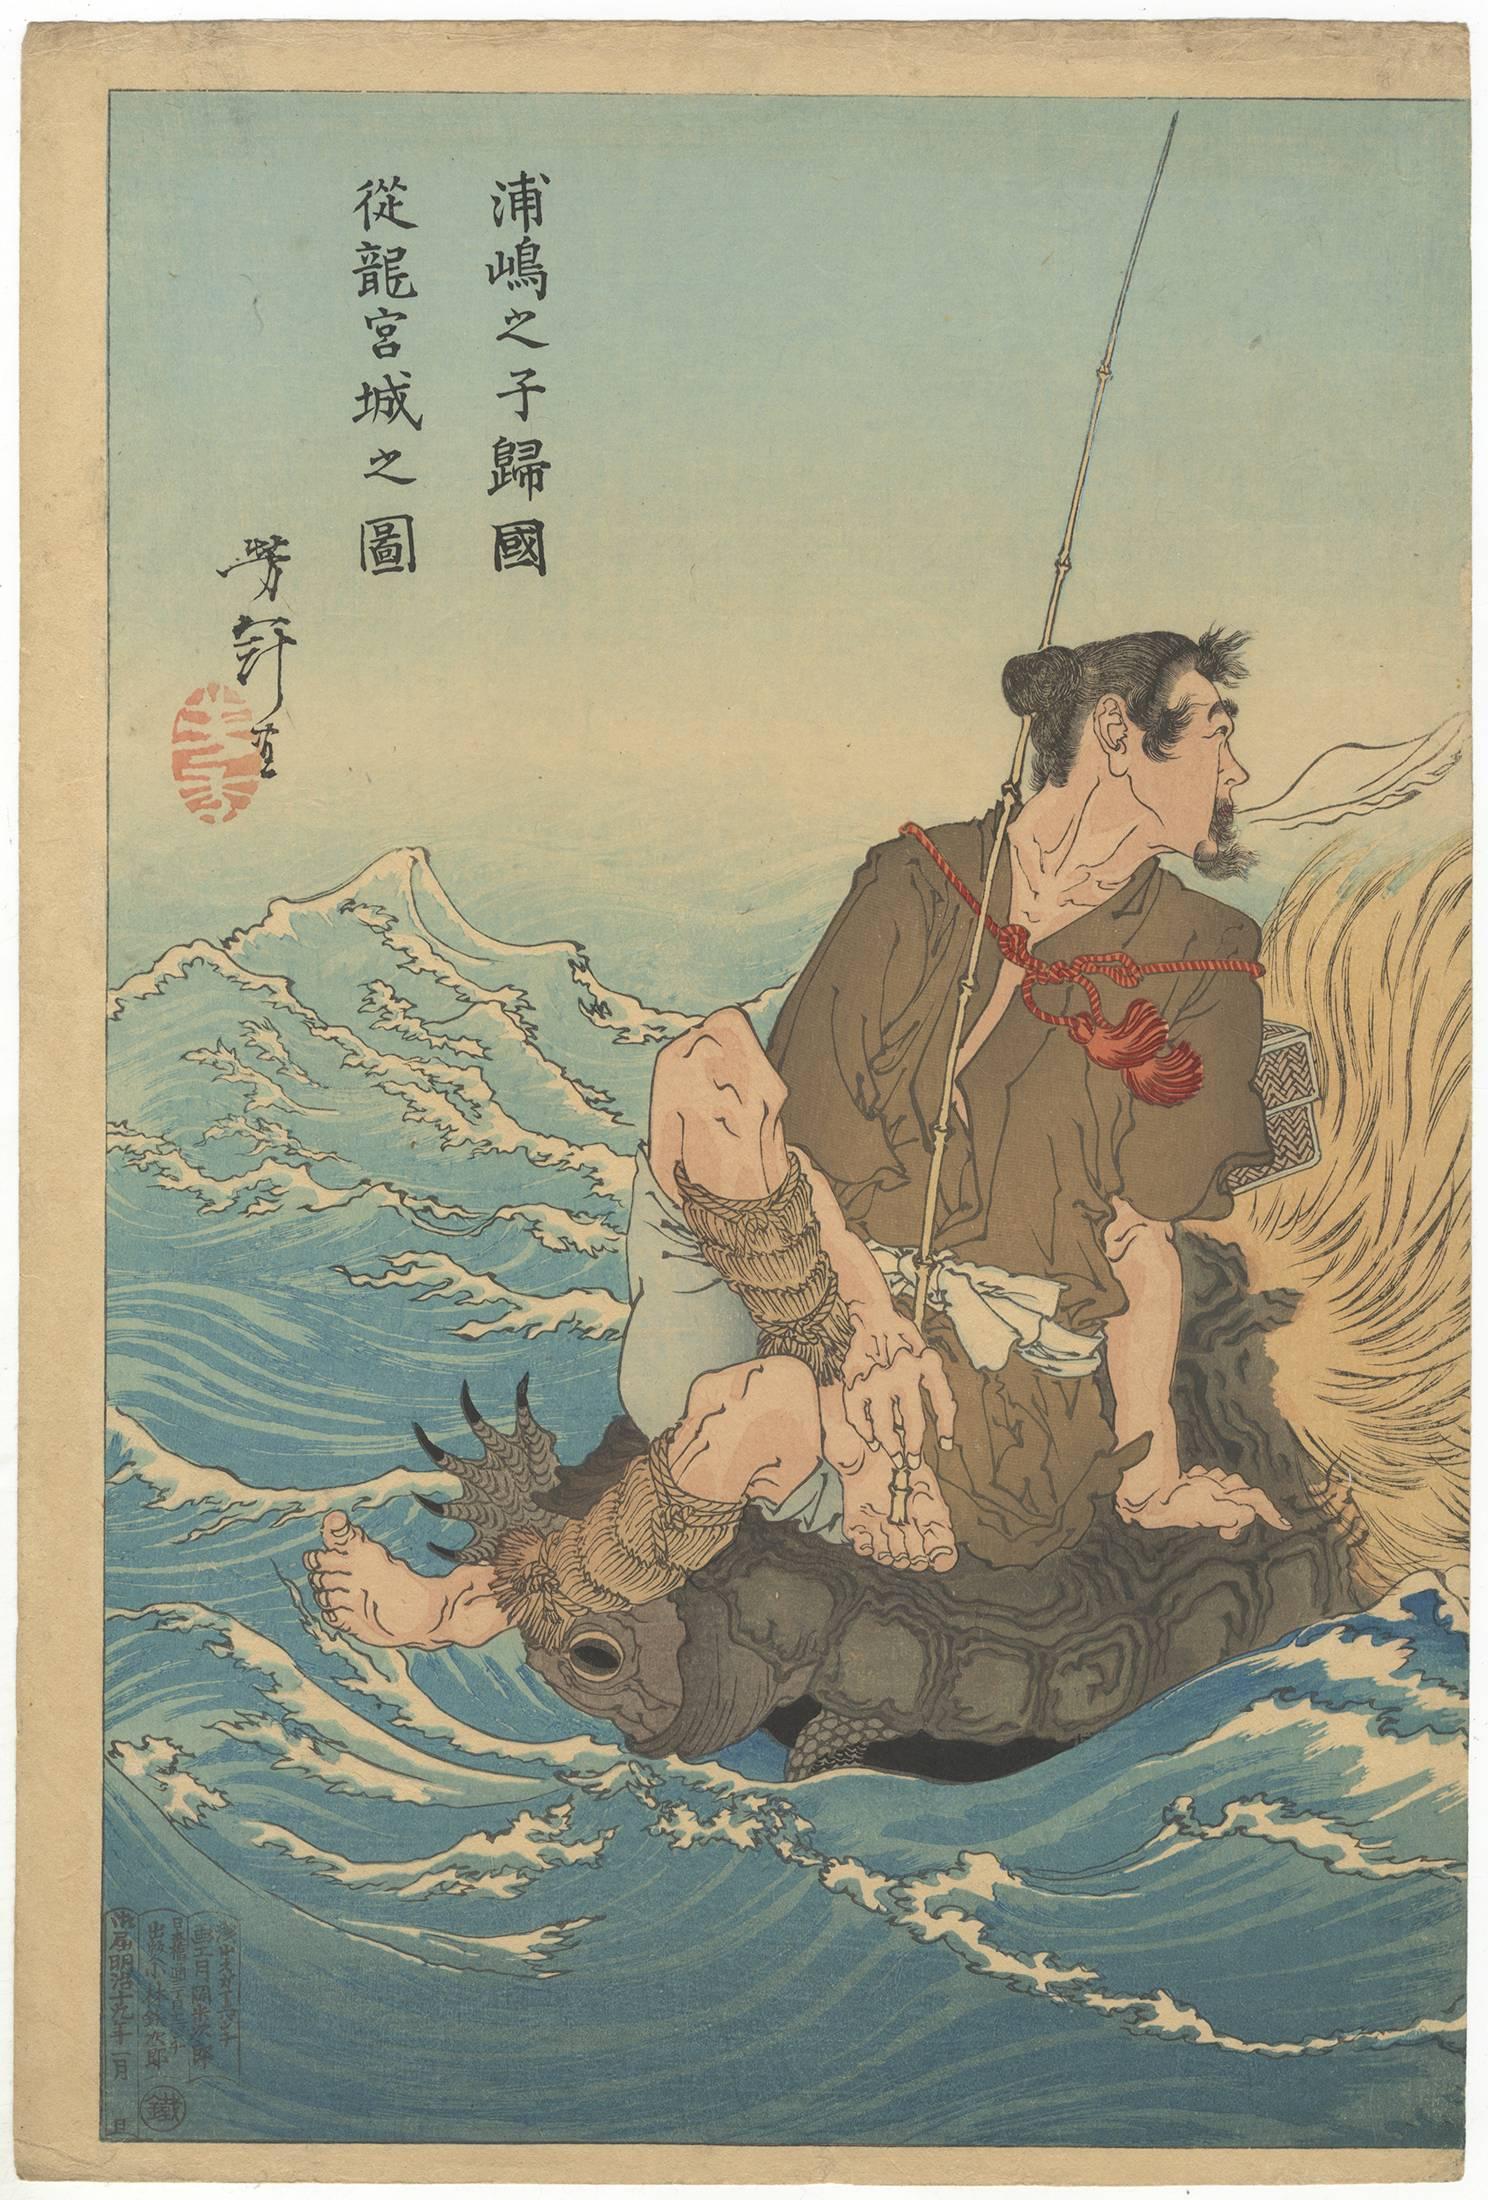 Artist: Yoshitoshi Tsukioka (1839–1892)
Title: Urashima Taro Returning Home from the Palace of the Dragon King (Diptych)
Publisher: Kobayashi Tetsujiro
Date: 1886
Size: (R) 25.2 x 37 (L) 25.3 x 37.4 cm

Yoshitoshi Tsukioka was a pupil of